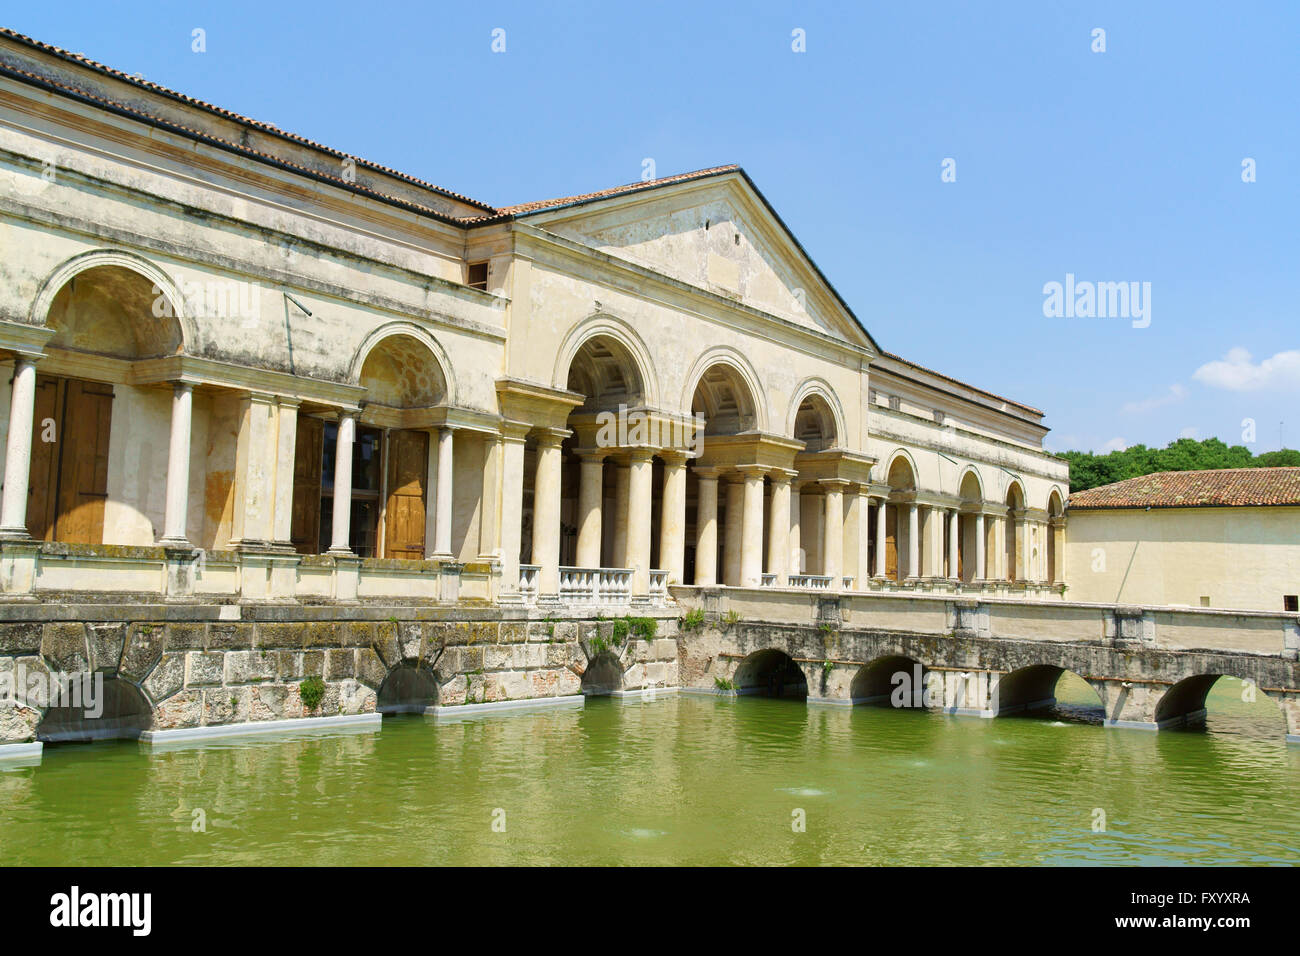 Mantua, Italien - 16. Juni 2013: Palazzo Te, Mantua, Italien. Dieser Palast wurde zwischen 1524 und 1534 vom Architekten Giulio Romano erbaut. Stockfoto